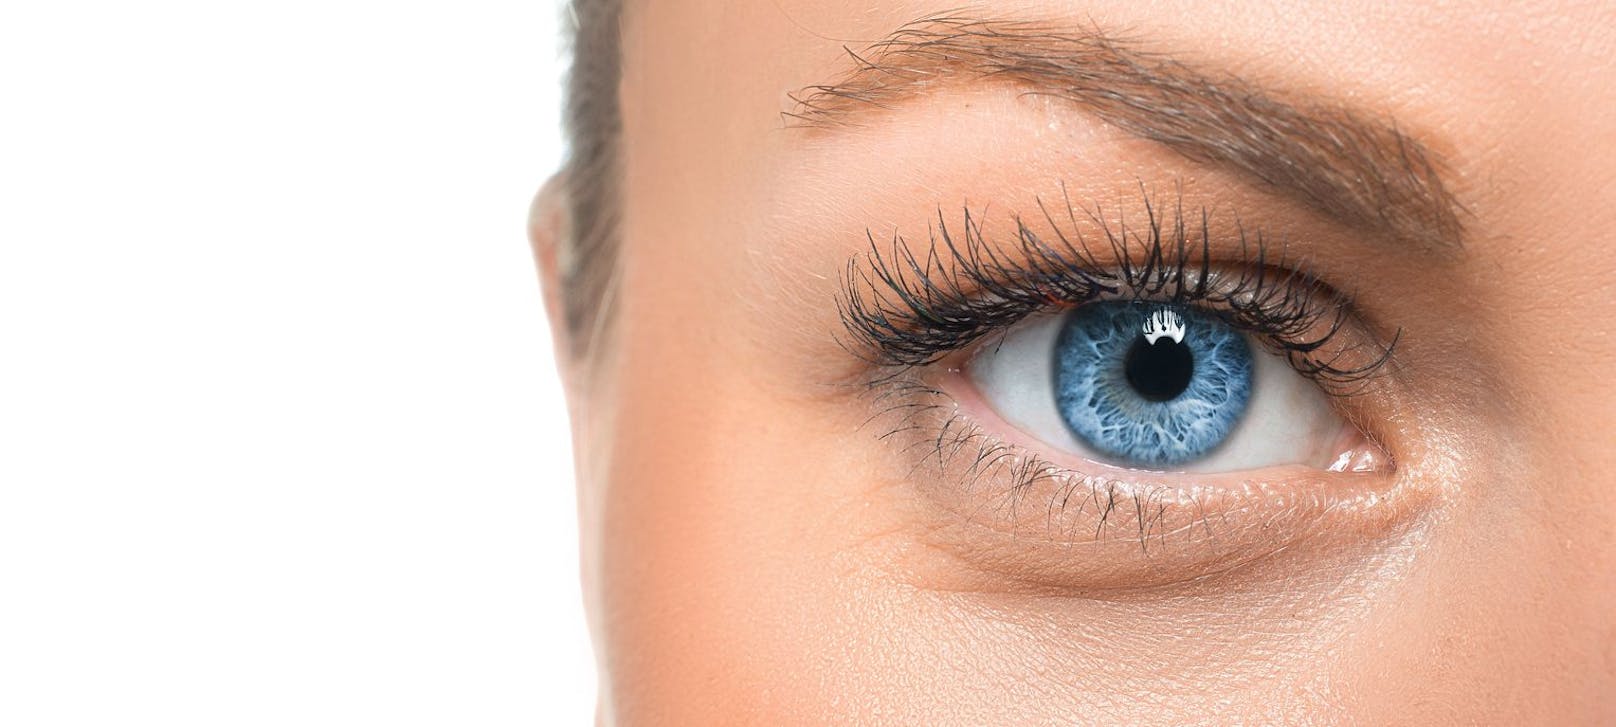 Blaue Augen sind ein rezessives Gen, was bedeutet, dass man zwei von ihnen haben muss, damit die Farbe sichtbar wird.